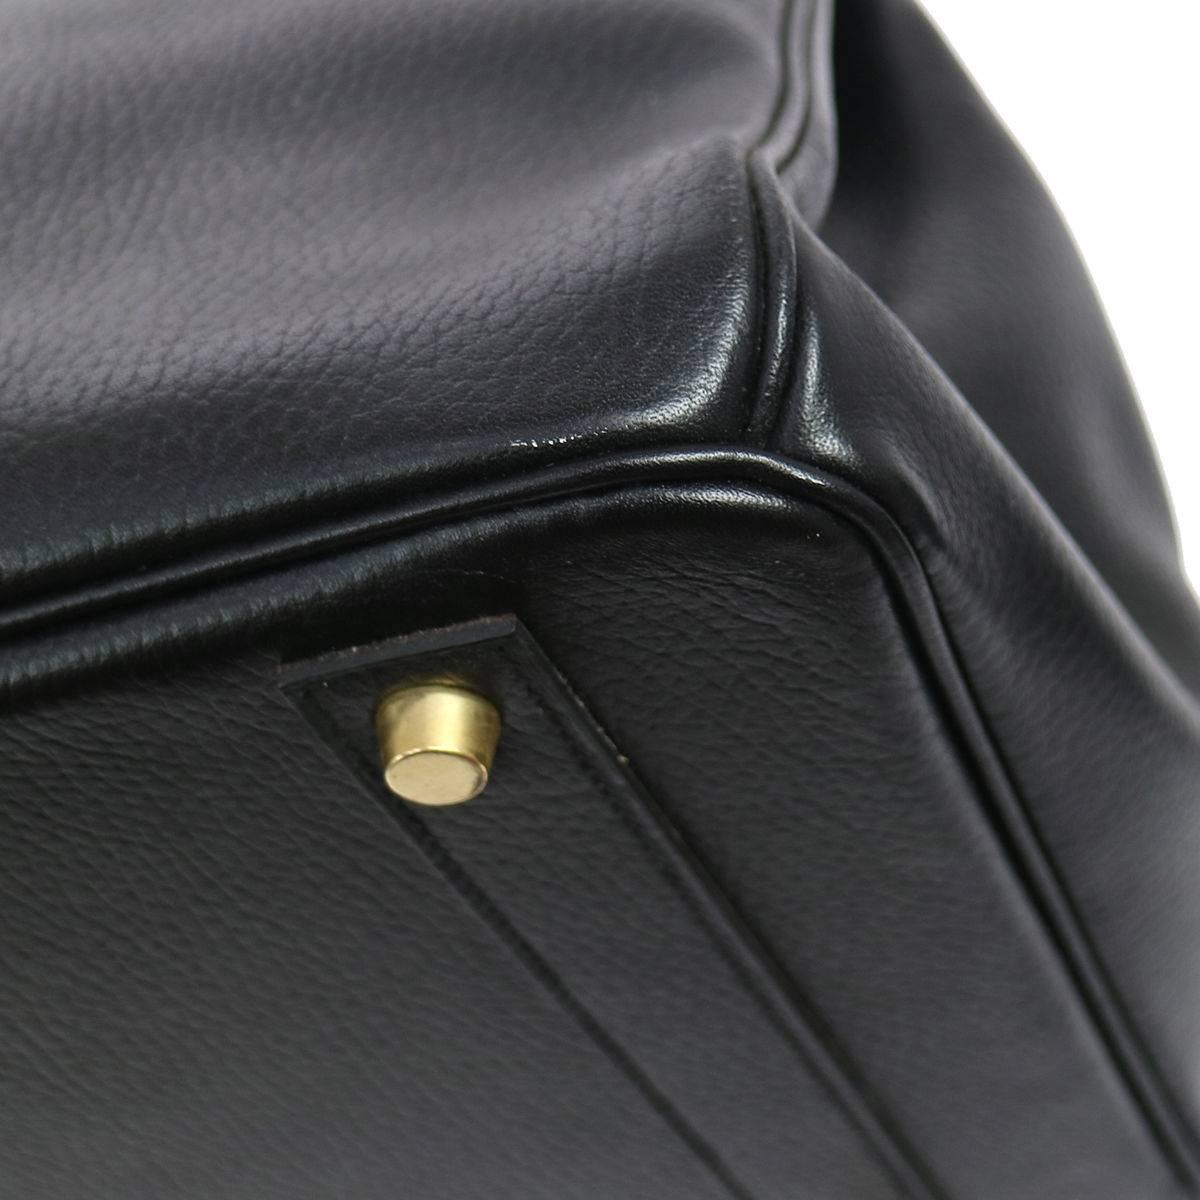 Hermes Birkin 35 Black Leather Gold Carryall Satchel Travel Travel Tote Bag  2